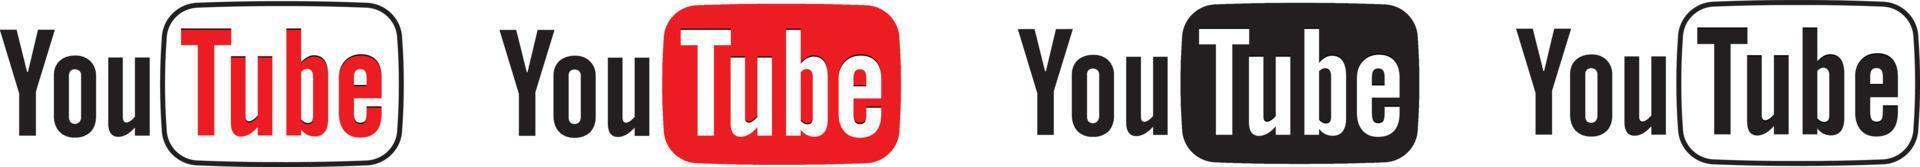 logo youtube mis en forme différente sur fond blanc vecteur